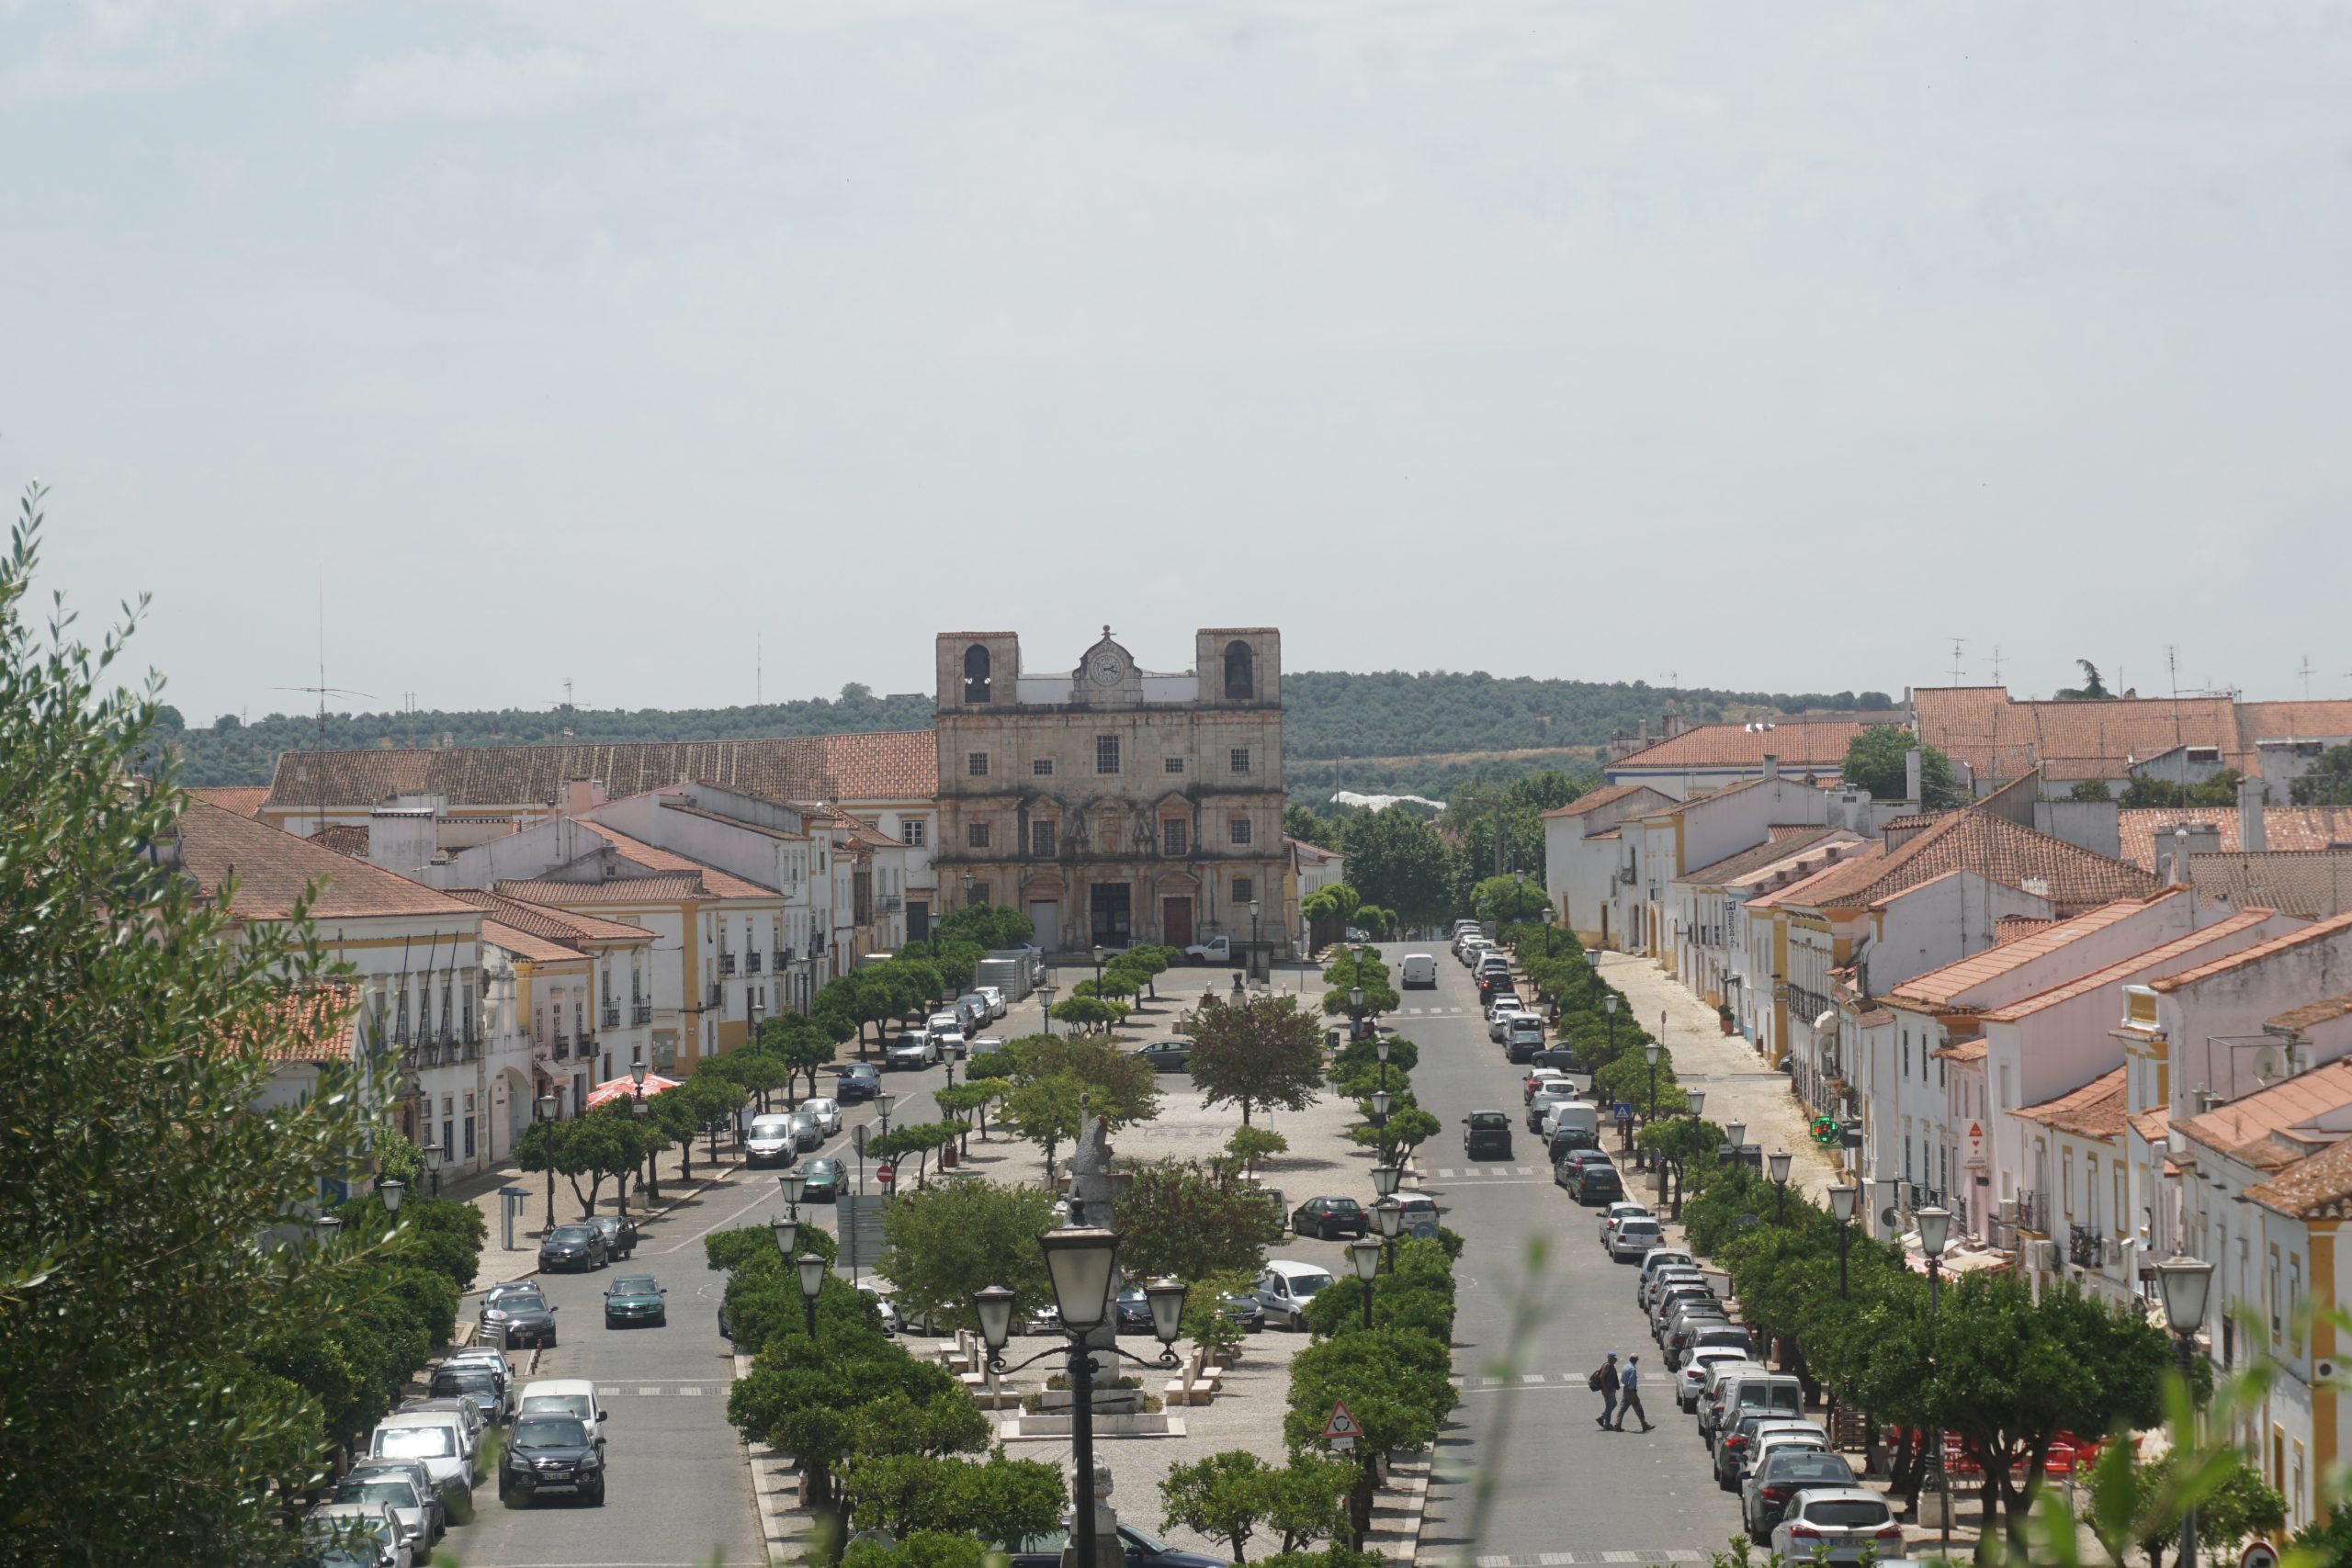 Vila Viçosa, Alentejo, Portugal